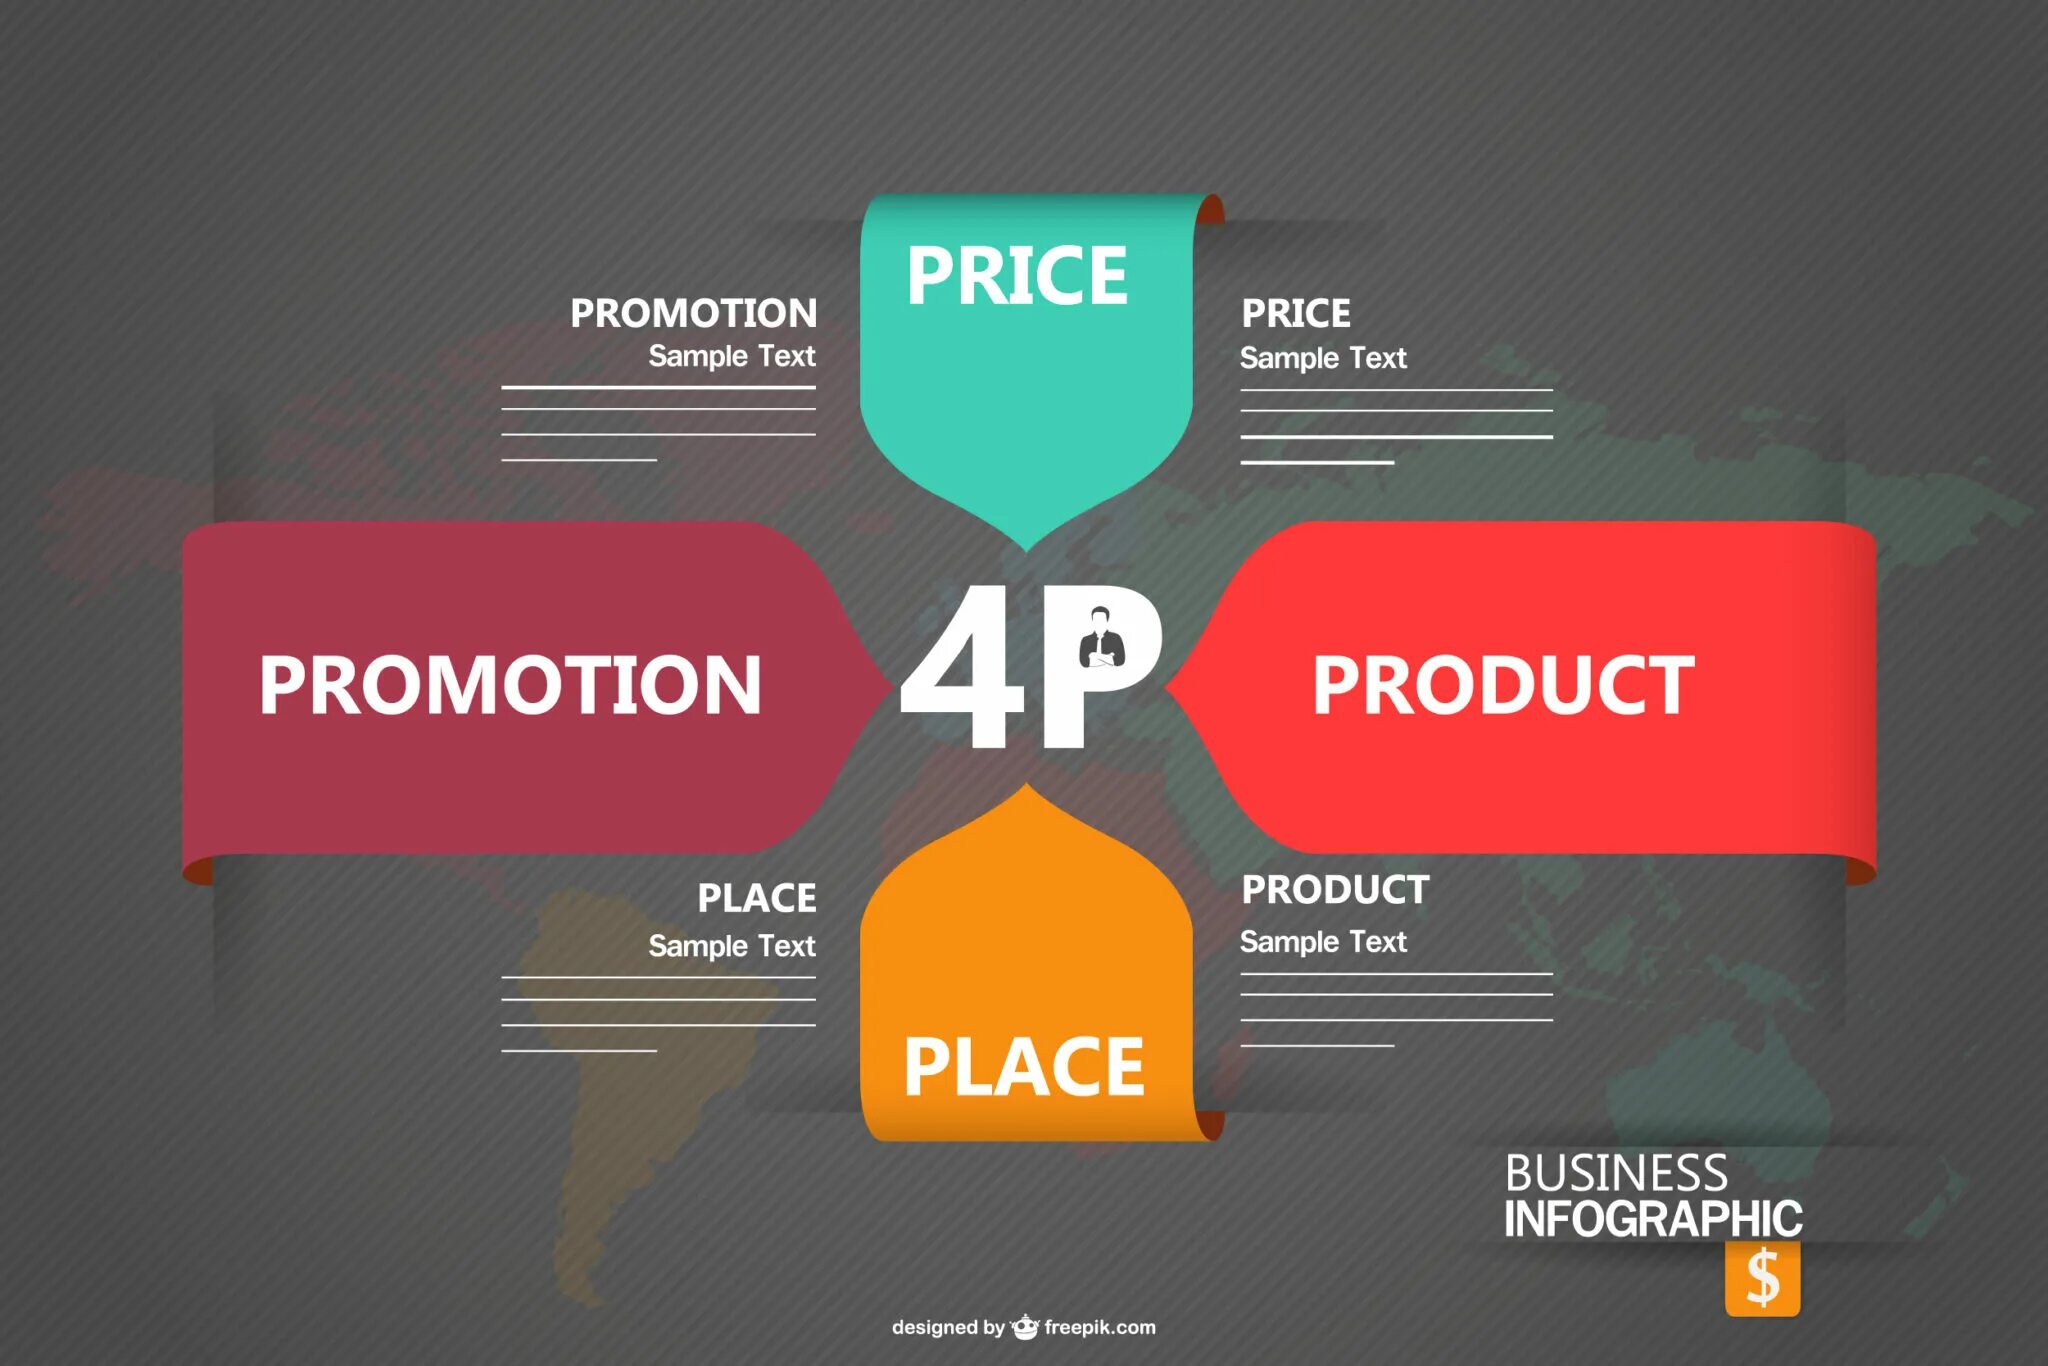 Product promotion. 4p в маркетинге. Комплекс маркетинга 4p. Модель 4 p маркетинг. Маркетинг микс.